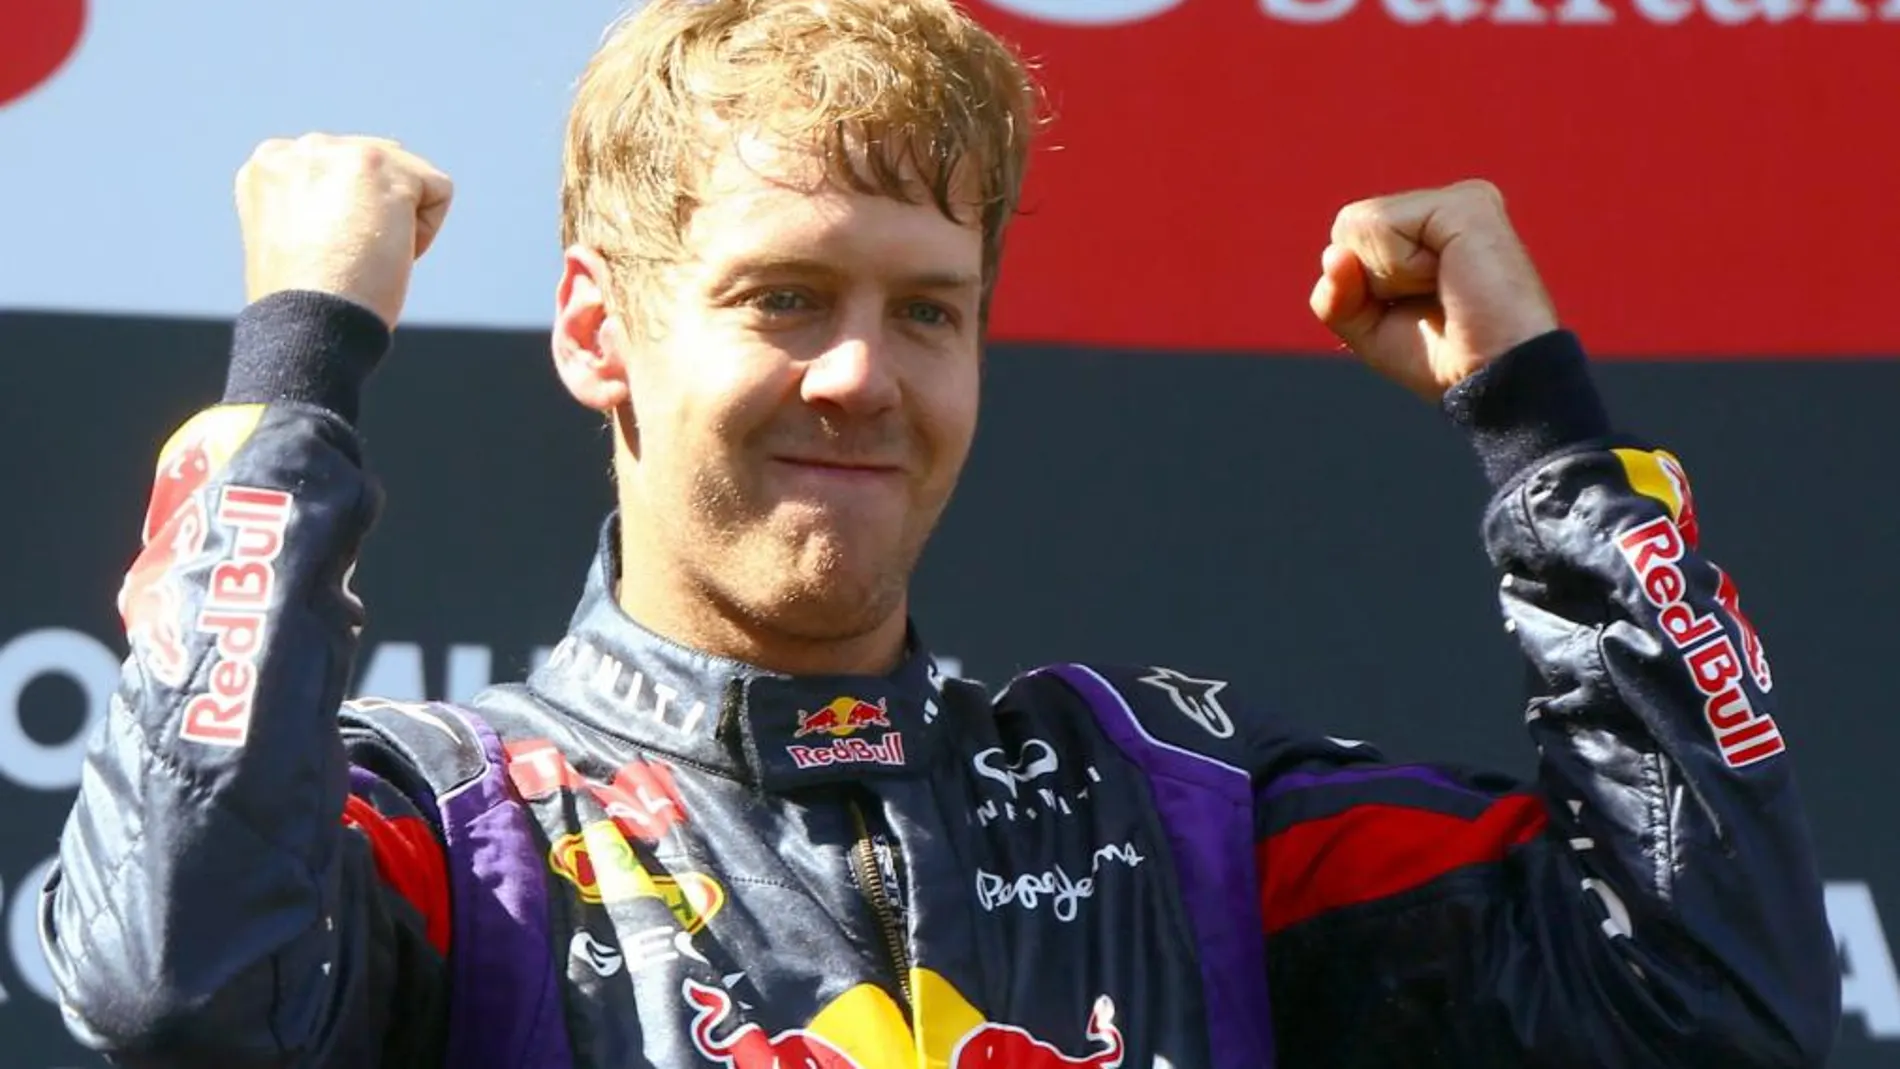 El alemán de Red Bull Sebastian Vettel se impuso ayer en el Gran Premio de Alemania y es más líder del Mundial. Alonso continúa siendo segundo